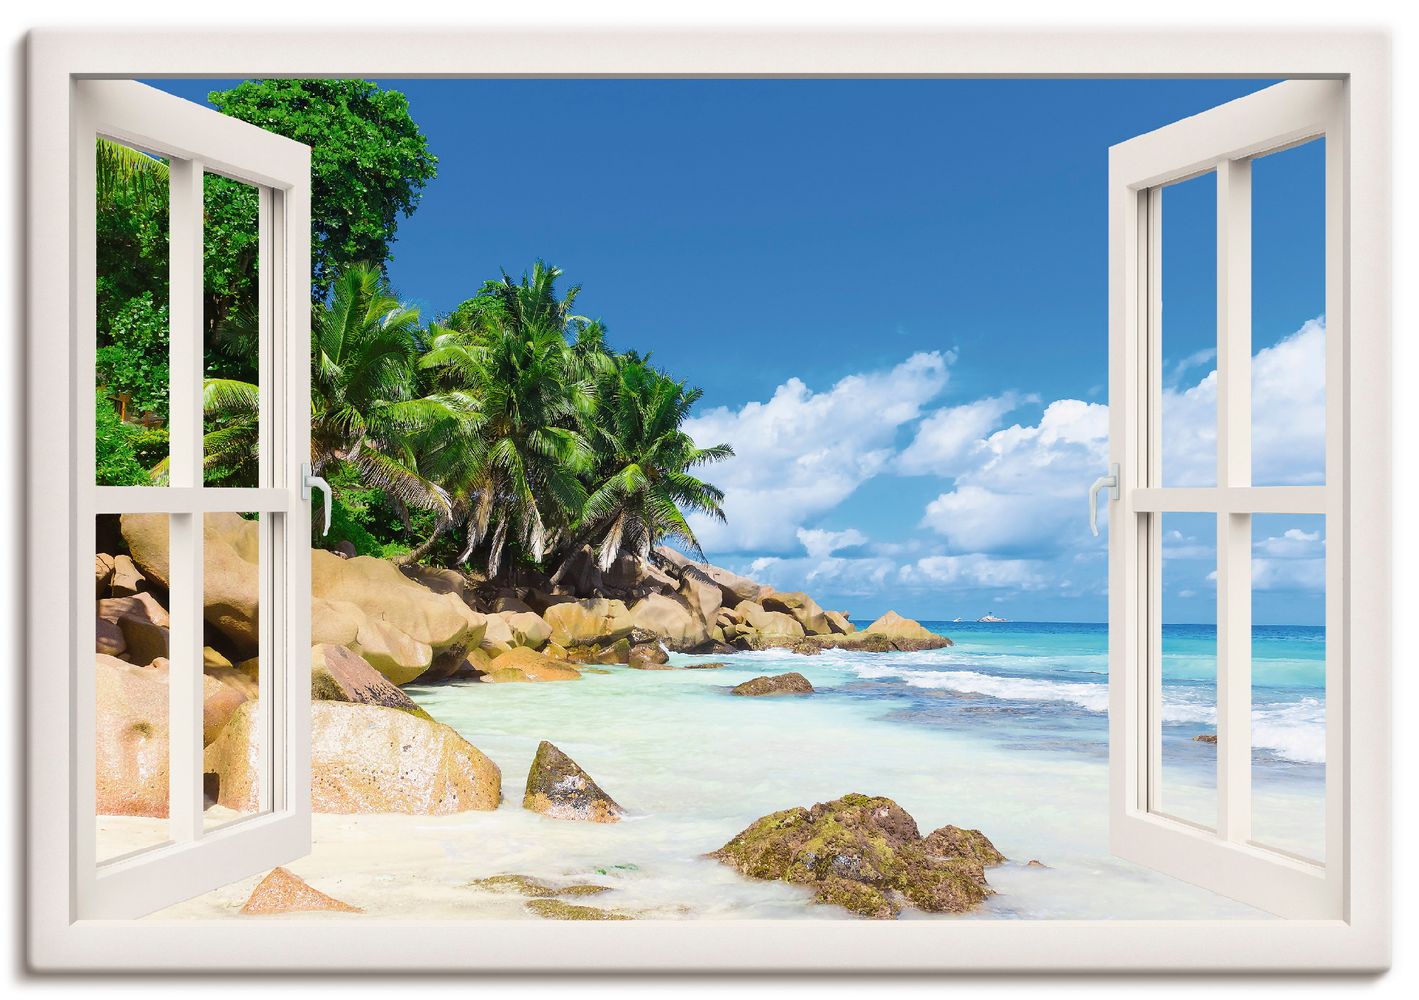 Vibrant Fenster - Studio: Palmen-Ruhe-Ufer Image mit weißem